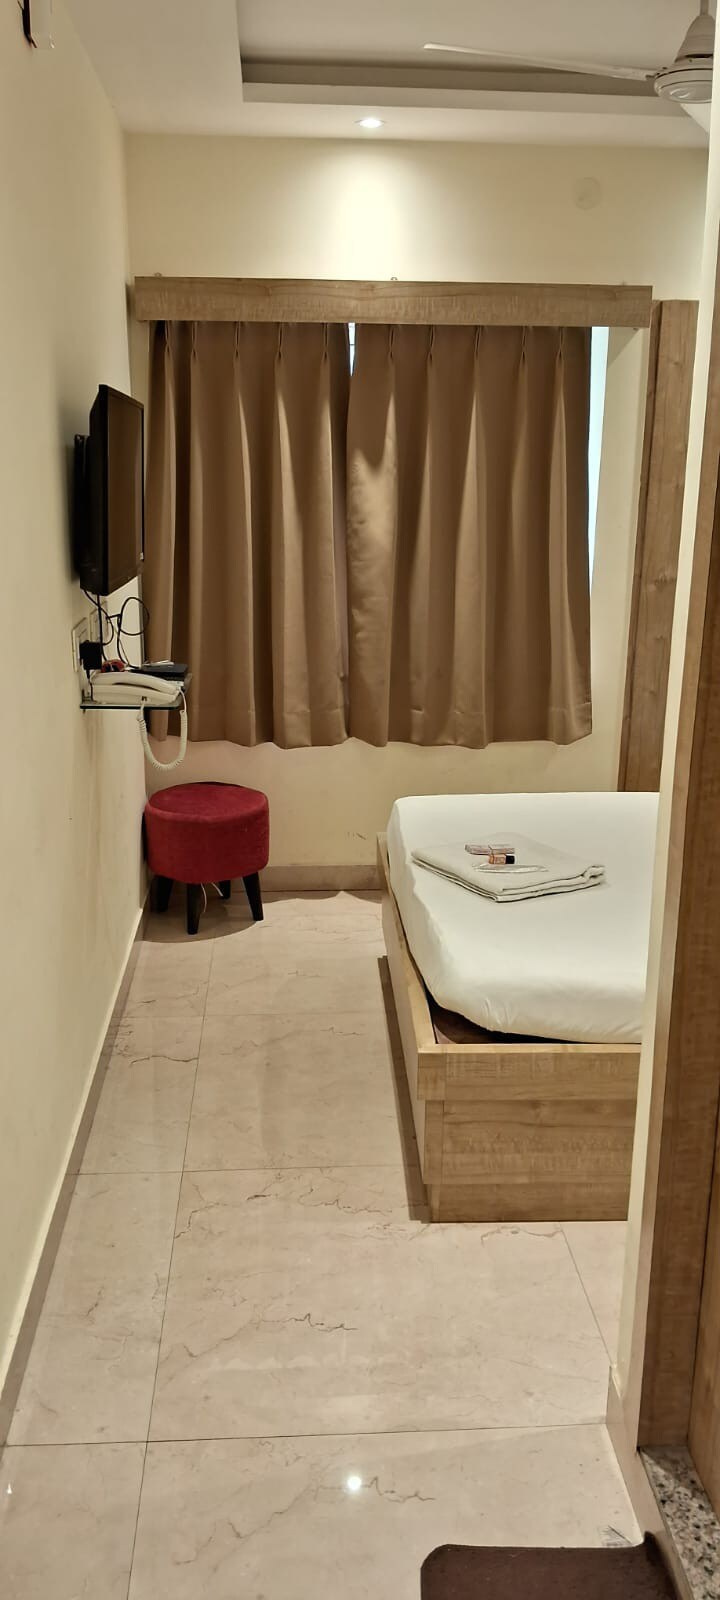 Private room by La cresta